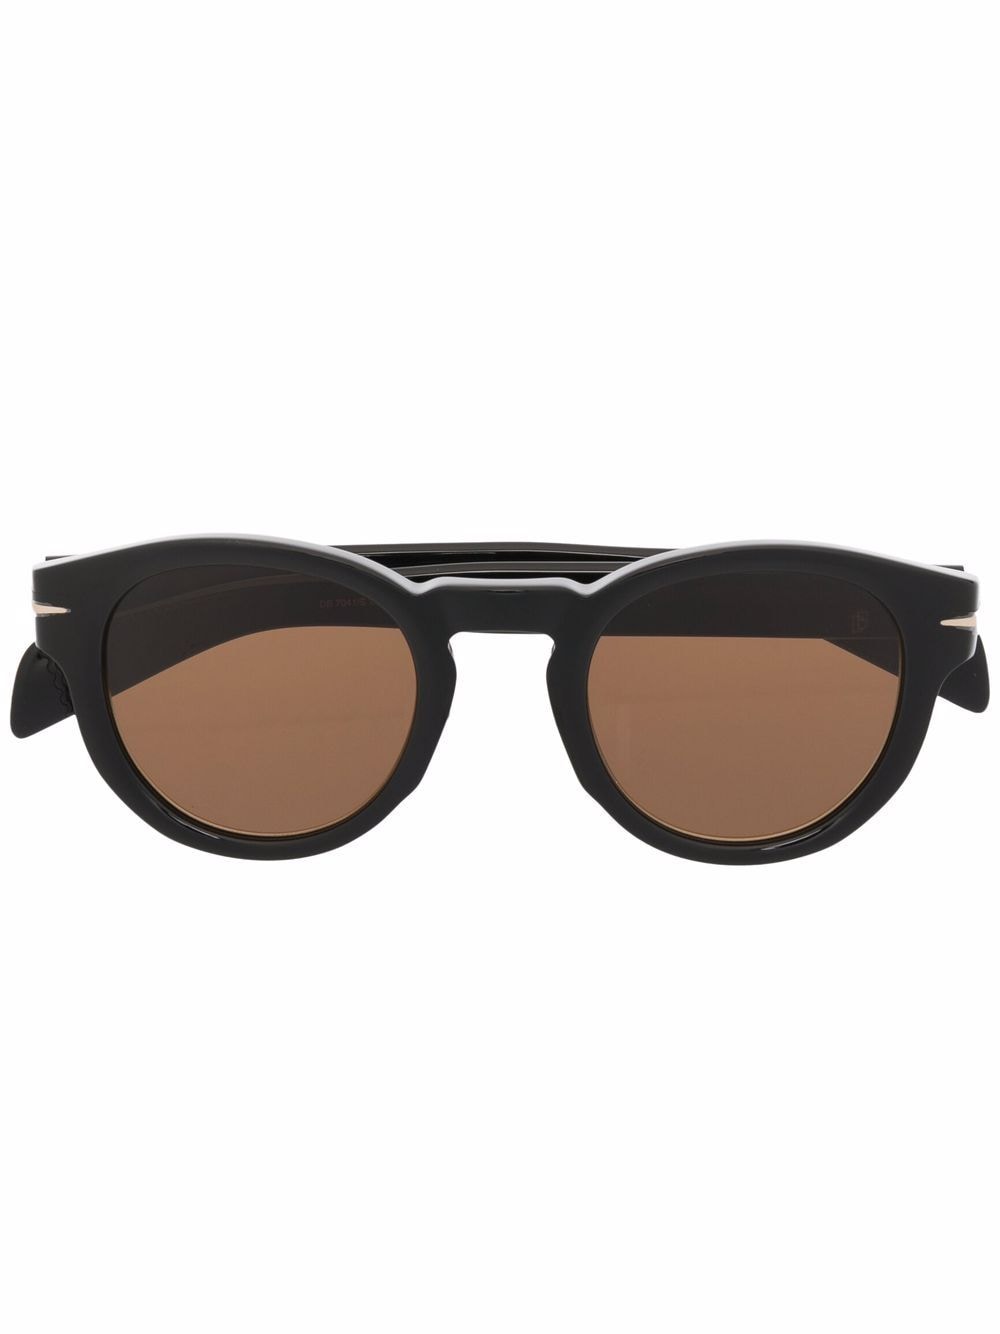 Eyewear by David Beckham cat-eye tinted sunglasses - Black von Eyewear by David Beckham